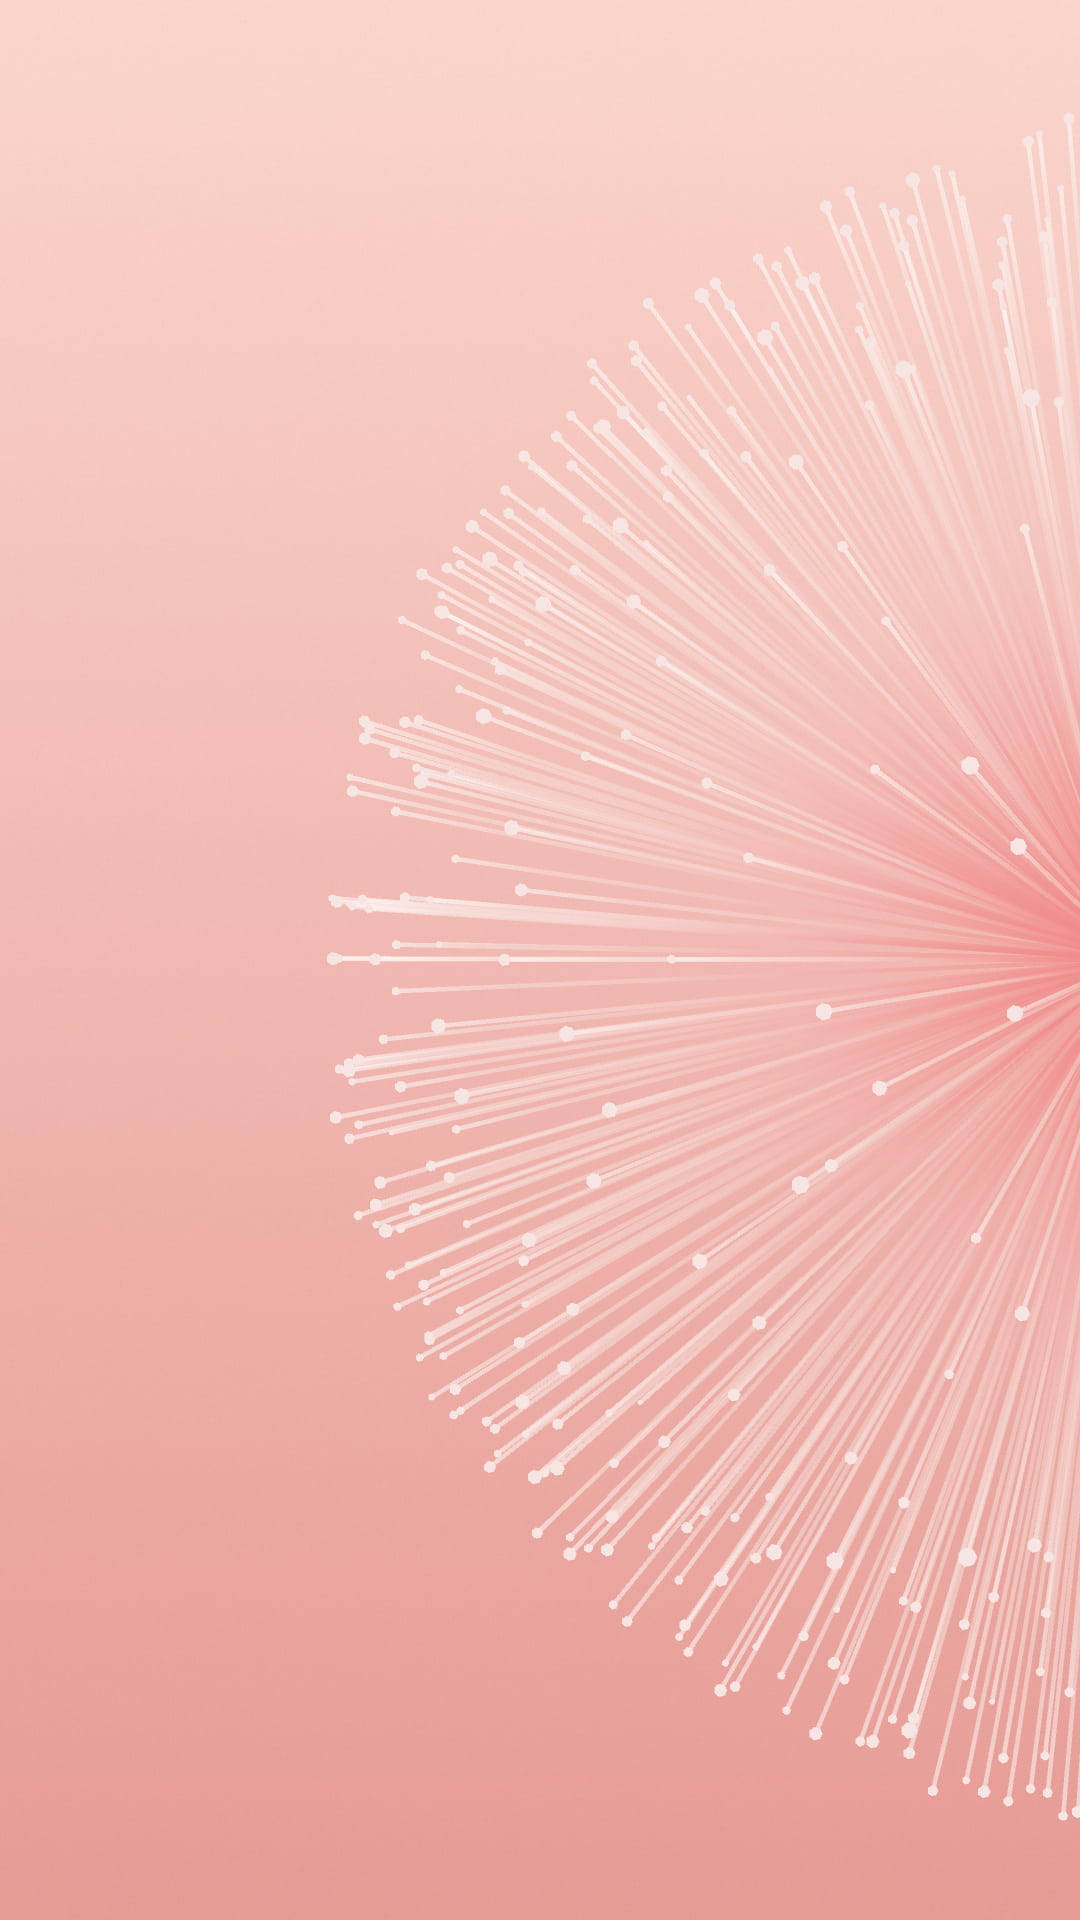 Pixel 3 Xl Displaying Beautiful Pink Circle Lines